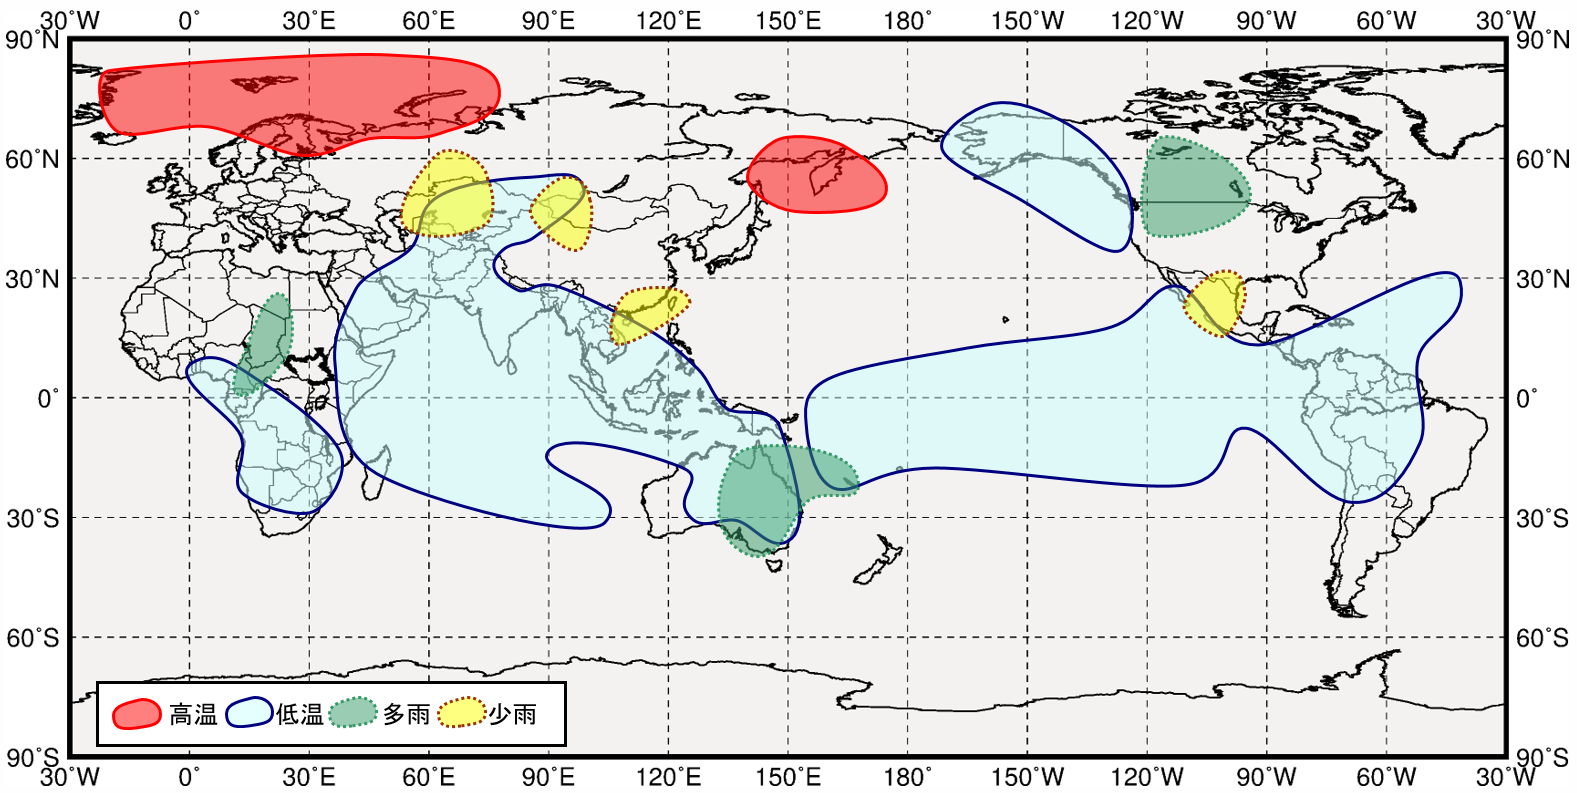 インド洋熱帯域が低温時の世界の１２月から２月にかけての気温と降水量の傾向の分布図